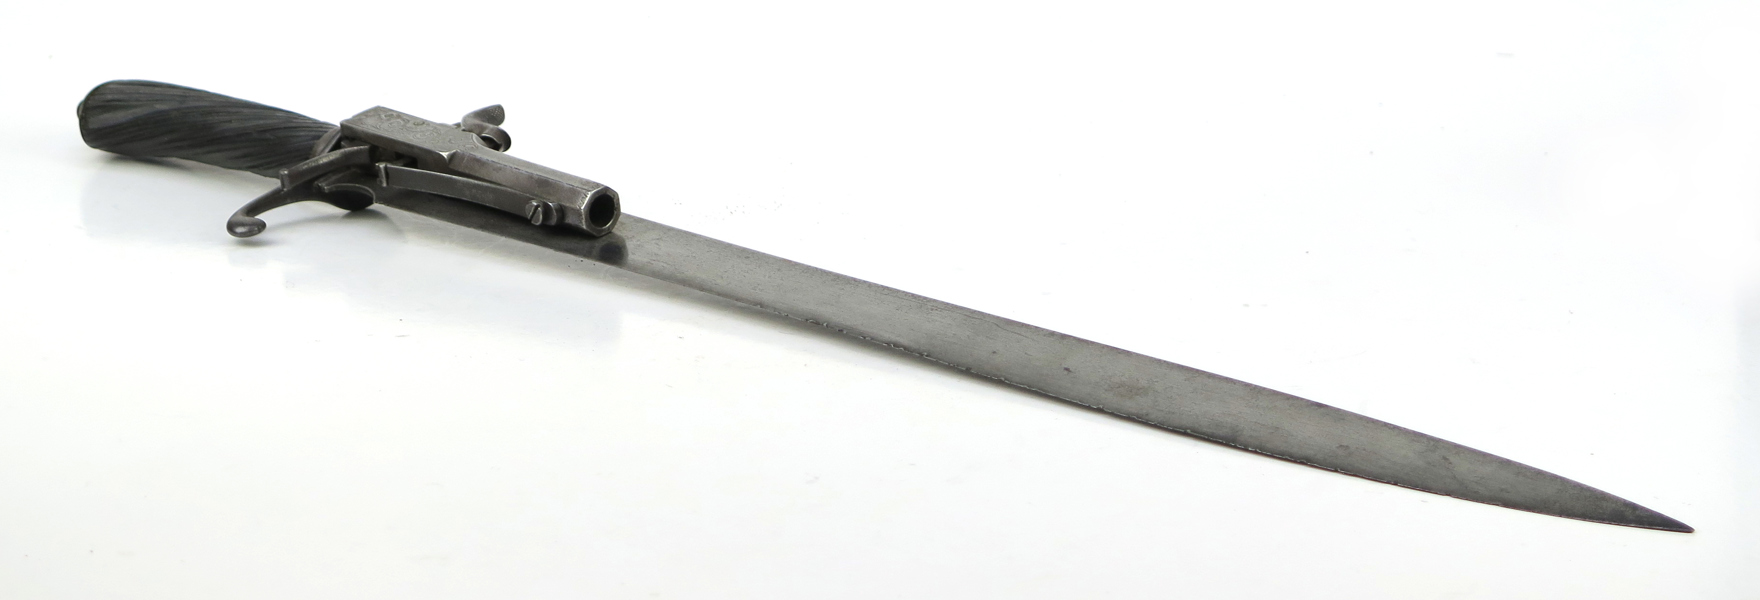 Hirschfänger med slaglåspistol, stål med ebenholtzfäste, 1800-talets 1 hälft, längd 45 cm_38173a_lg.jpeg